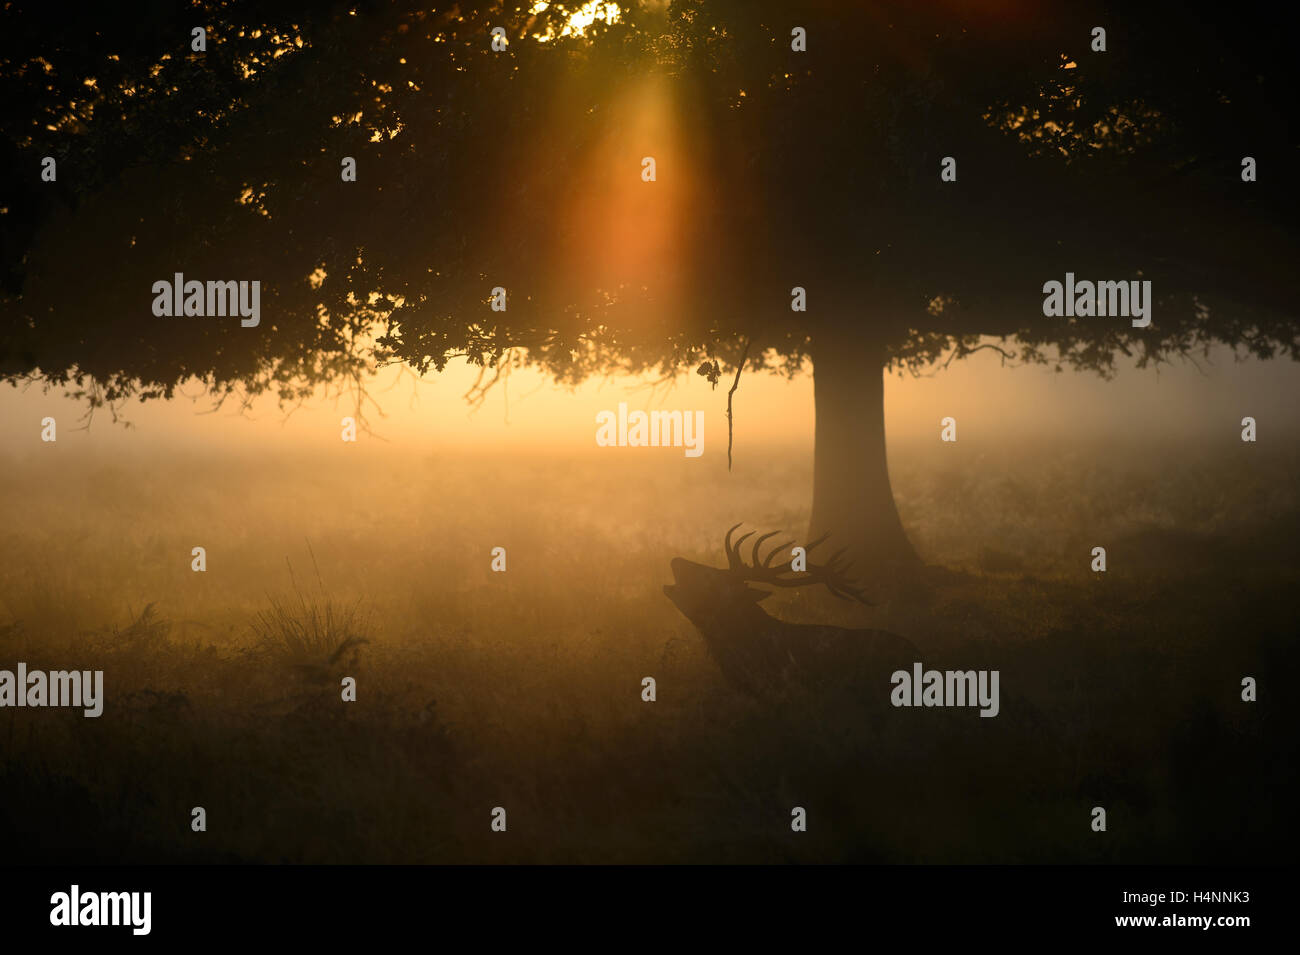 Red Deer stag chiamando all'inizio di foschia mattutina di sunrise, sotto un albero e raggi di luce, Richmond Park, London, Regno Unito. Foto Stock